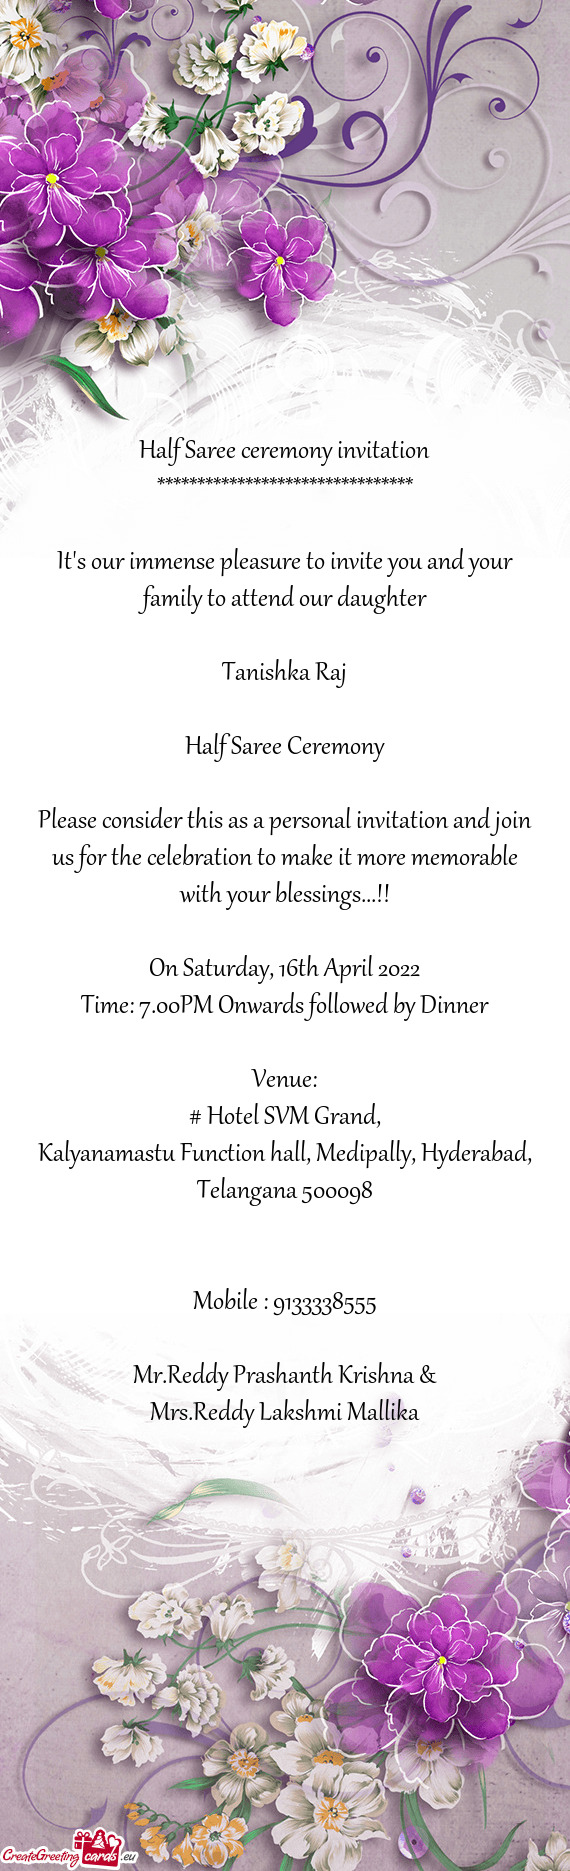 Kalyanamastu Function hall, Medipally, Hyderabad, Telangana 500098